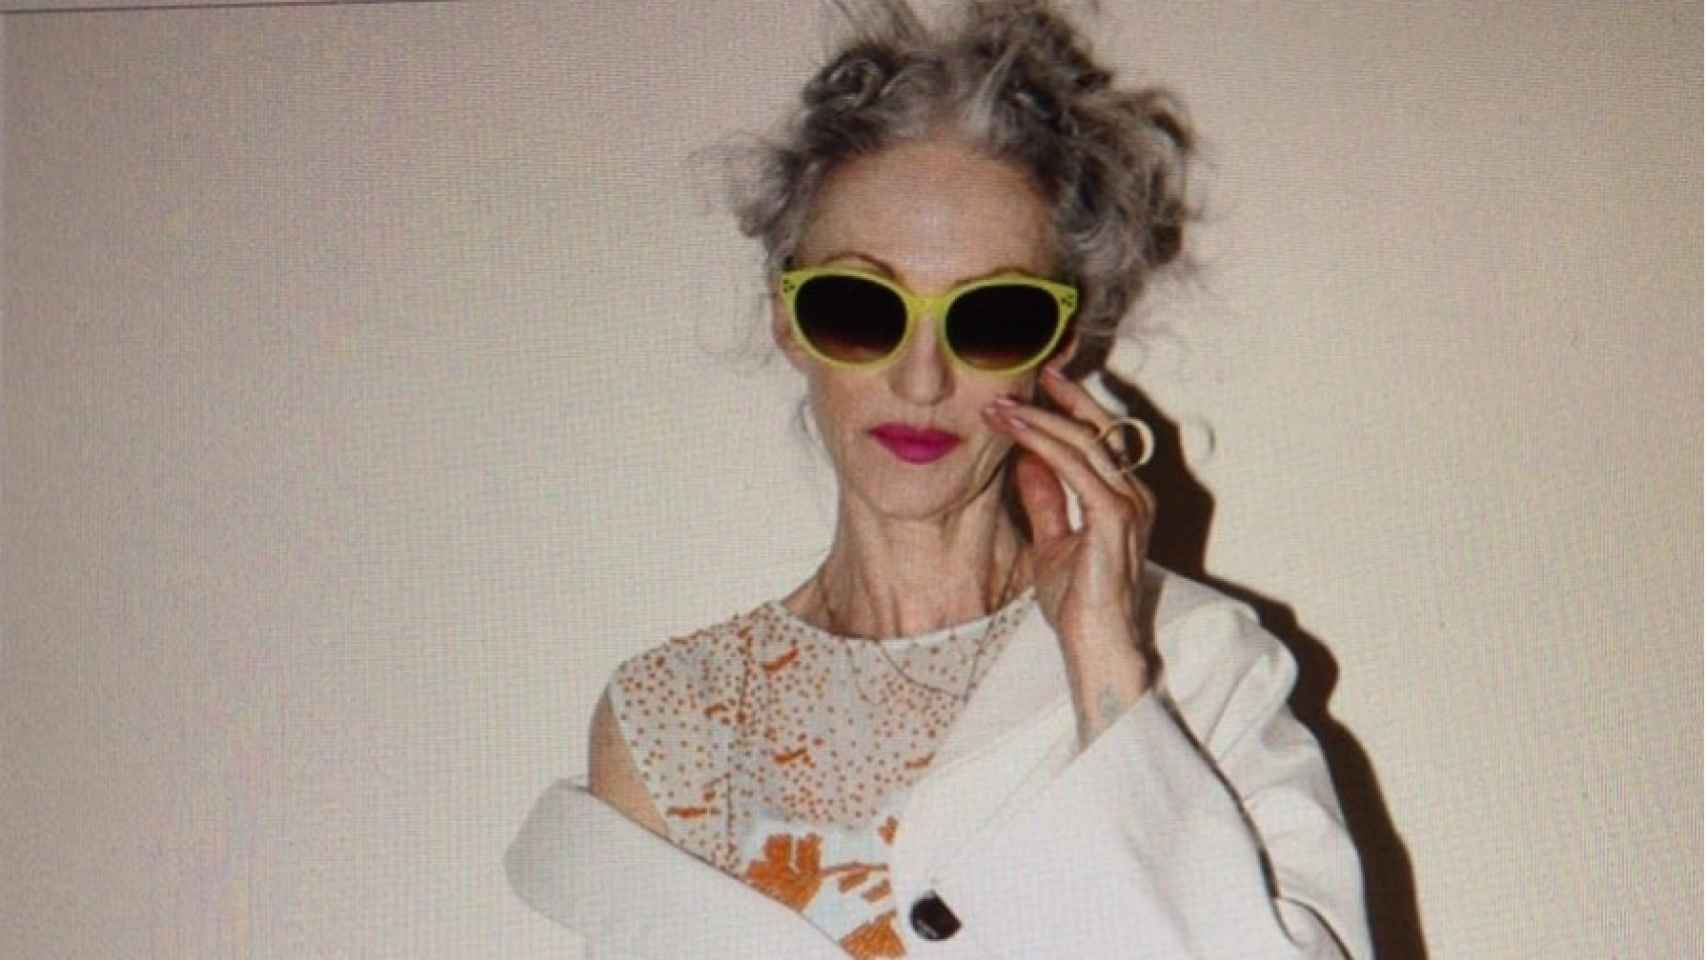 La estilista jamás sale de casa sin sus gafas de sol y los labios maquillados. | Foto: Instagram Linda Rodin.